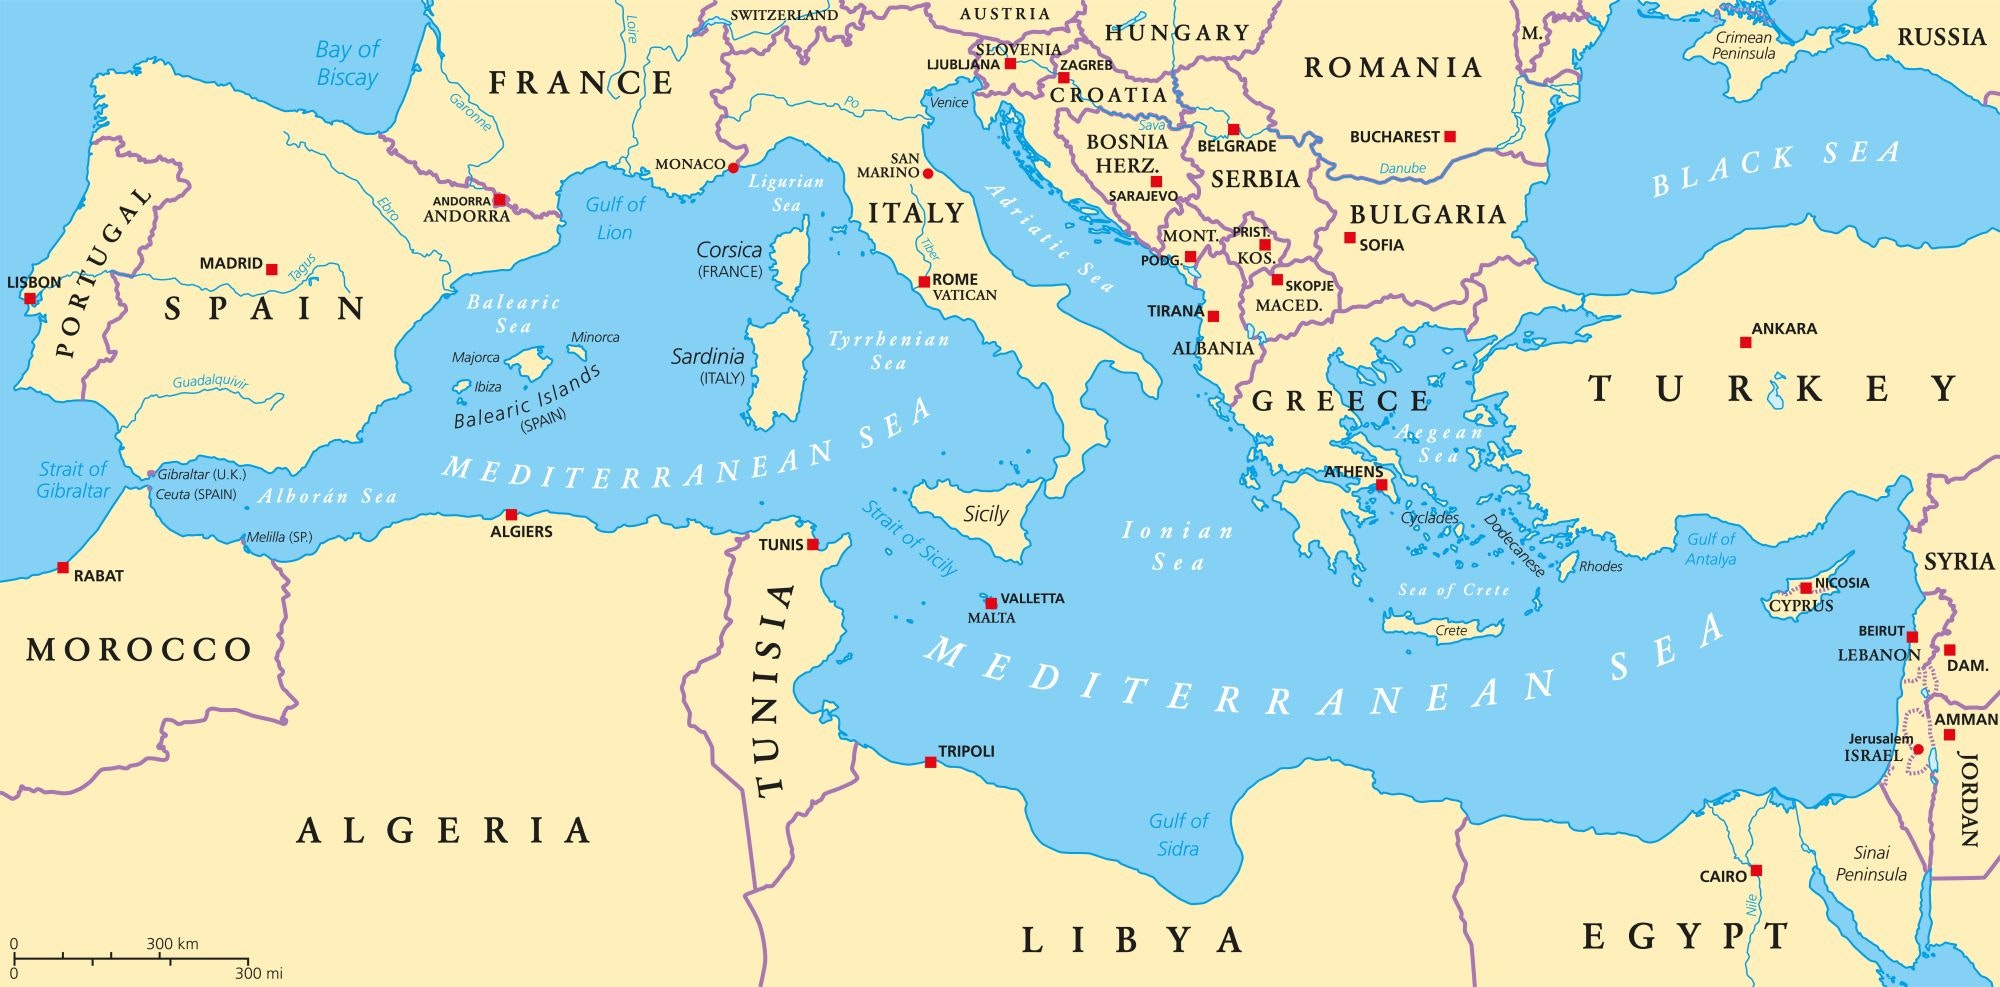 Karta Sredozemnog mora i okolnog kopna